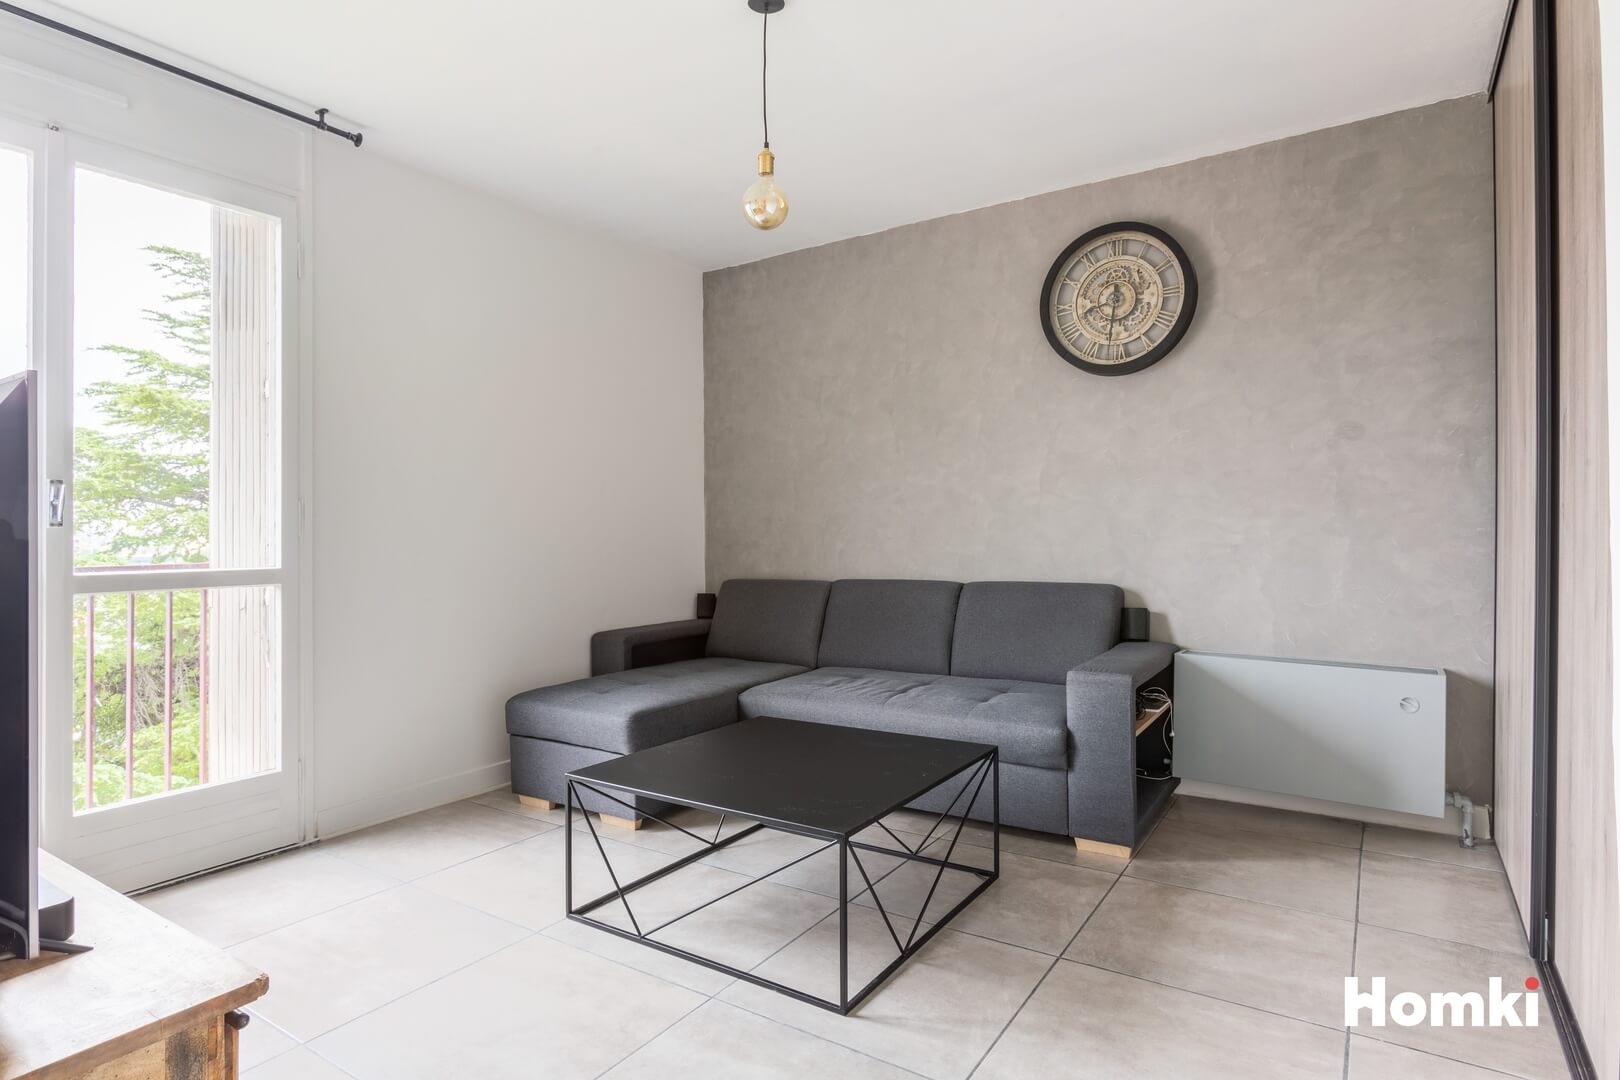 Homki - Vente Appartement  de 84.0 m² à Aix-en-Provence 13100